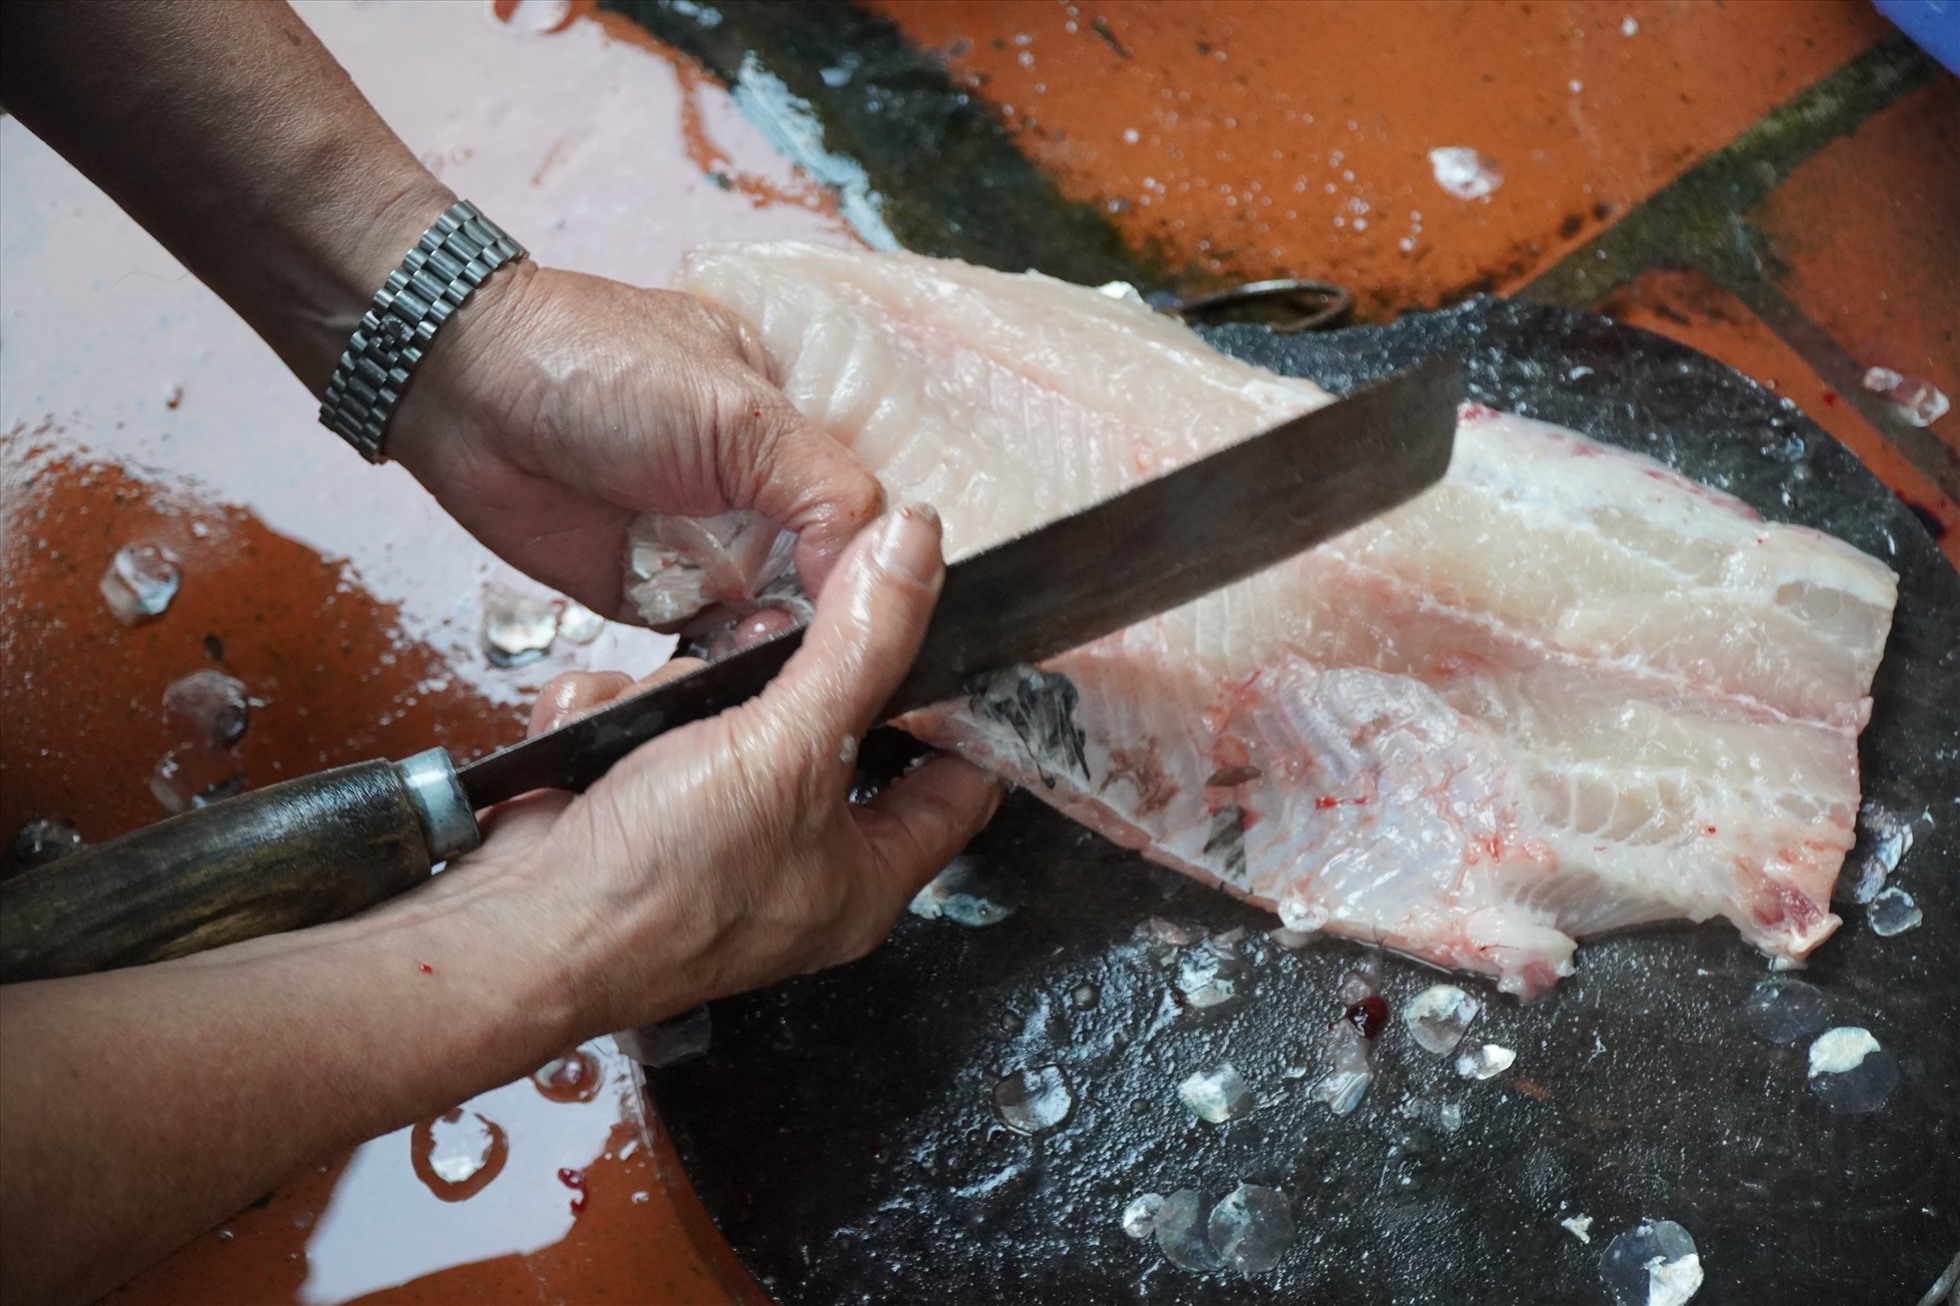 Được biết, cách làm nem cá có phần cầu kỳ và trải qua nhiều công đoạn khác nhau, từ khâu chọn nguyên liệu, chế biến và ủ cá lên men. Ảnh: Quách Du